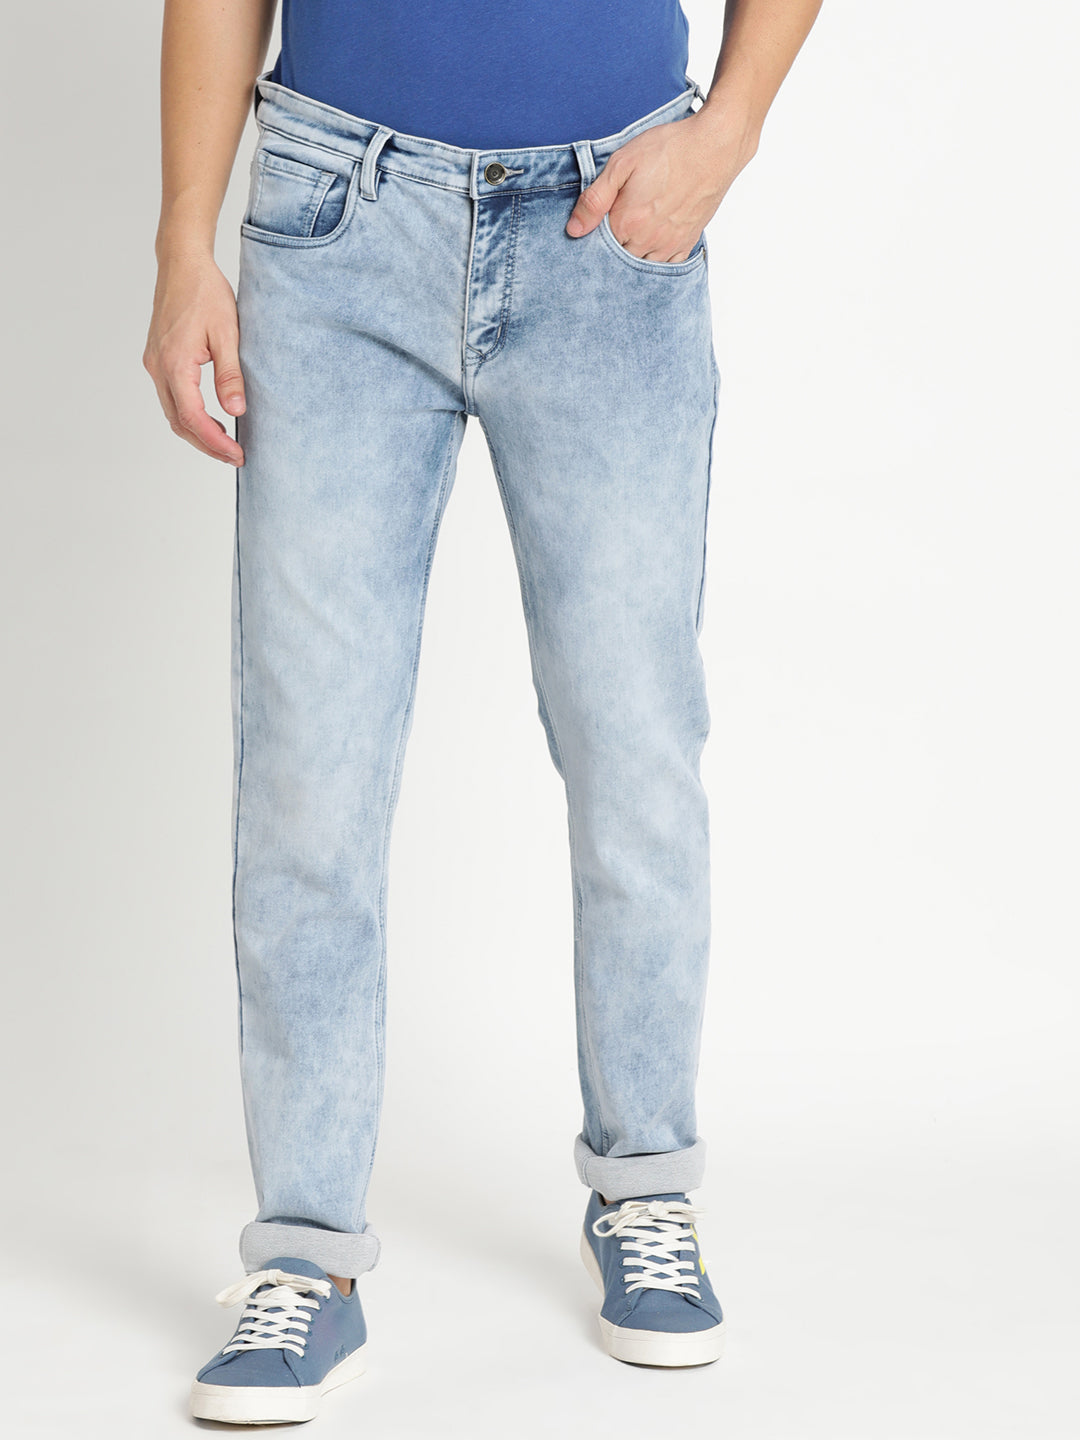 Buy Comfort Fit Light Blue Denim jeans For Men – Metal Hawk